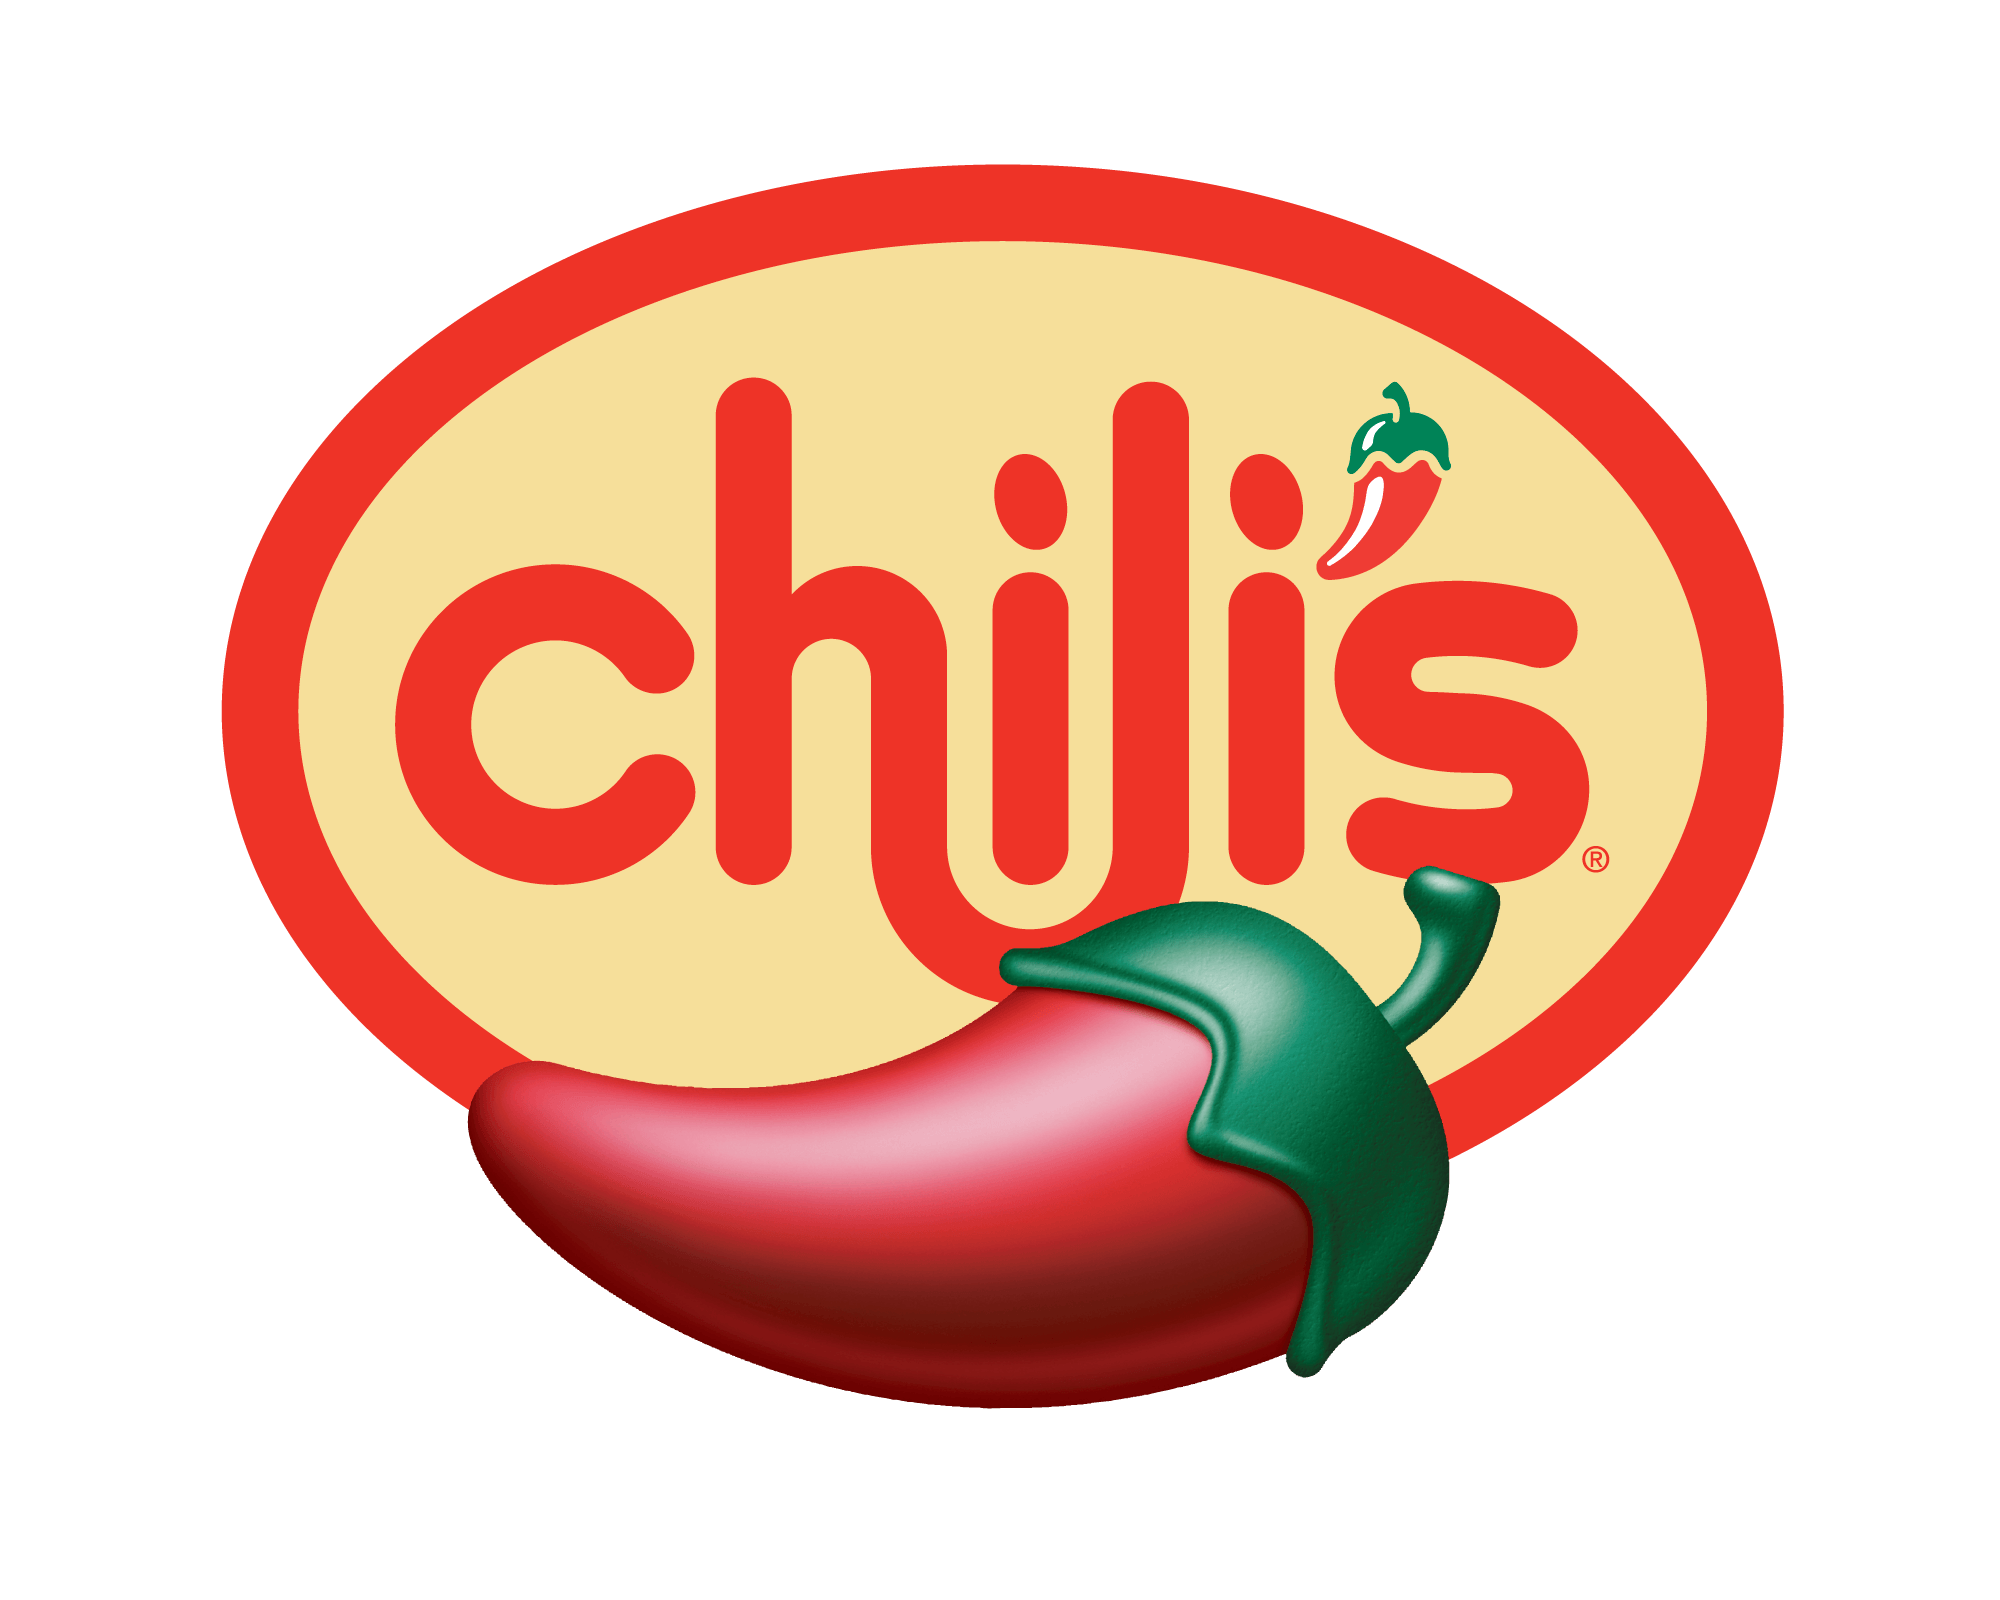 Chillis Rest Logo - Chili's logo